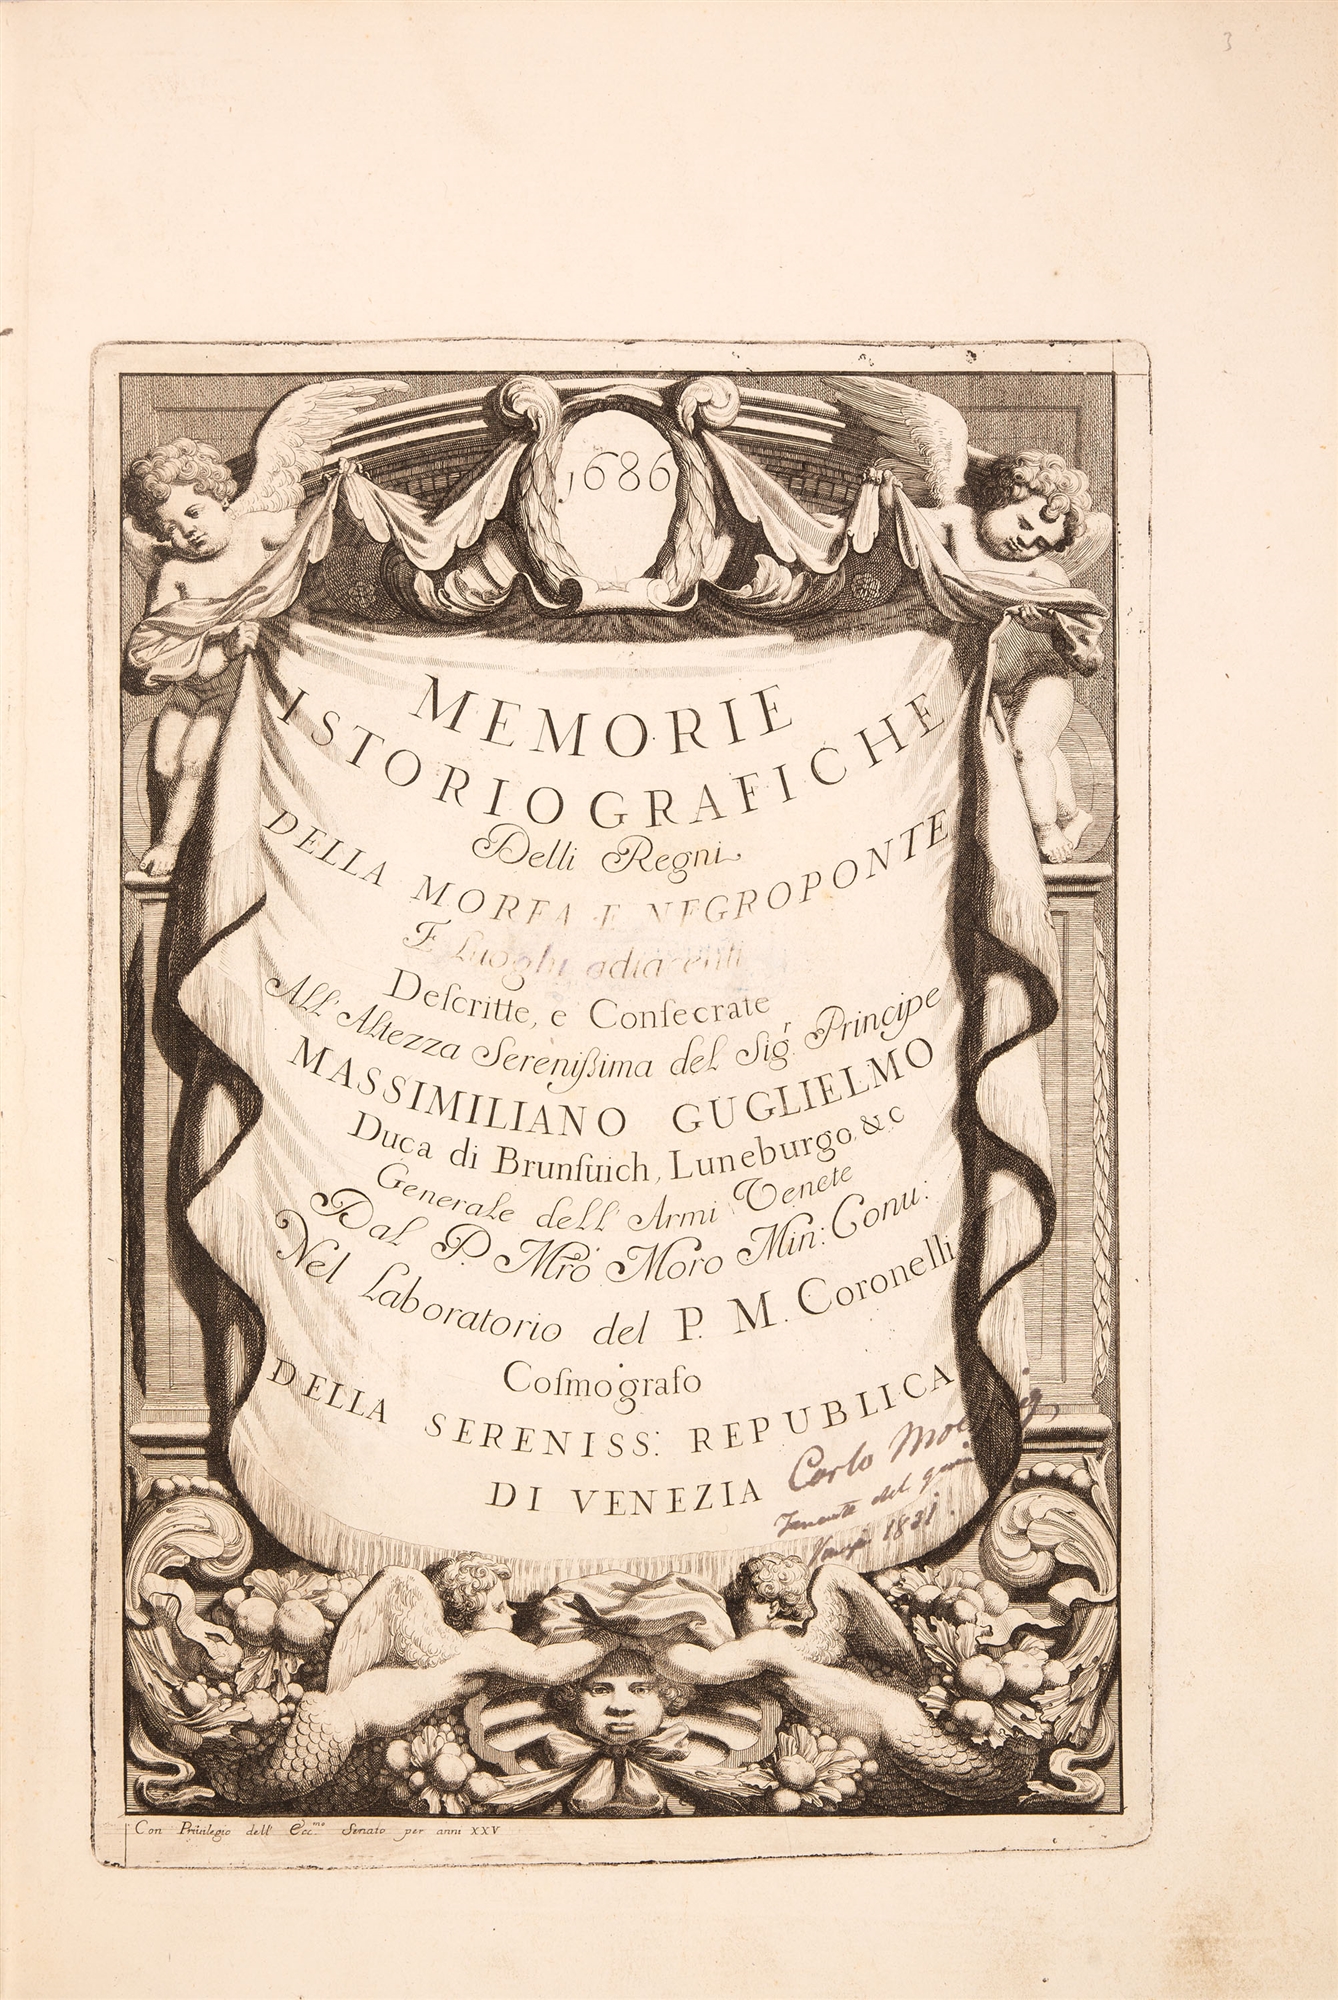 V. Coronelli, Memorie istoriografiche delli regni della Morea. Venedig 1686.